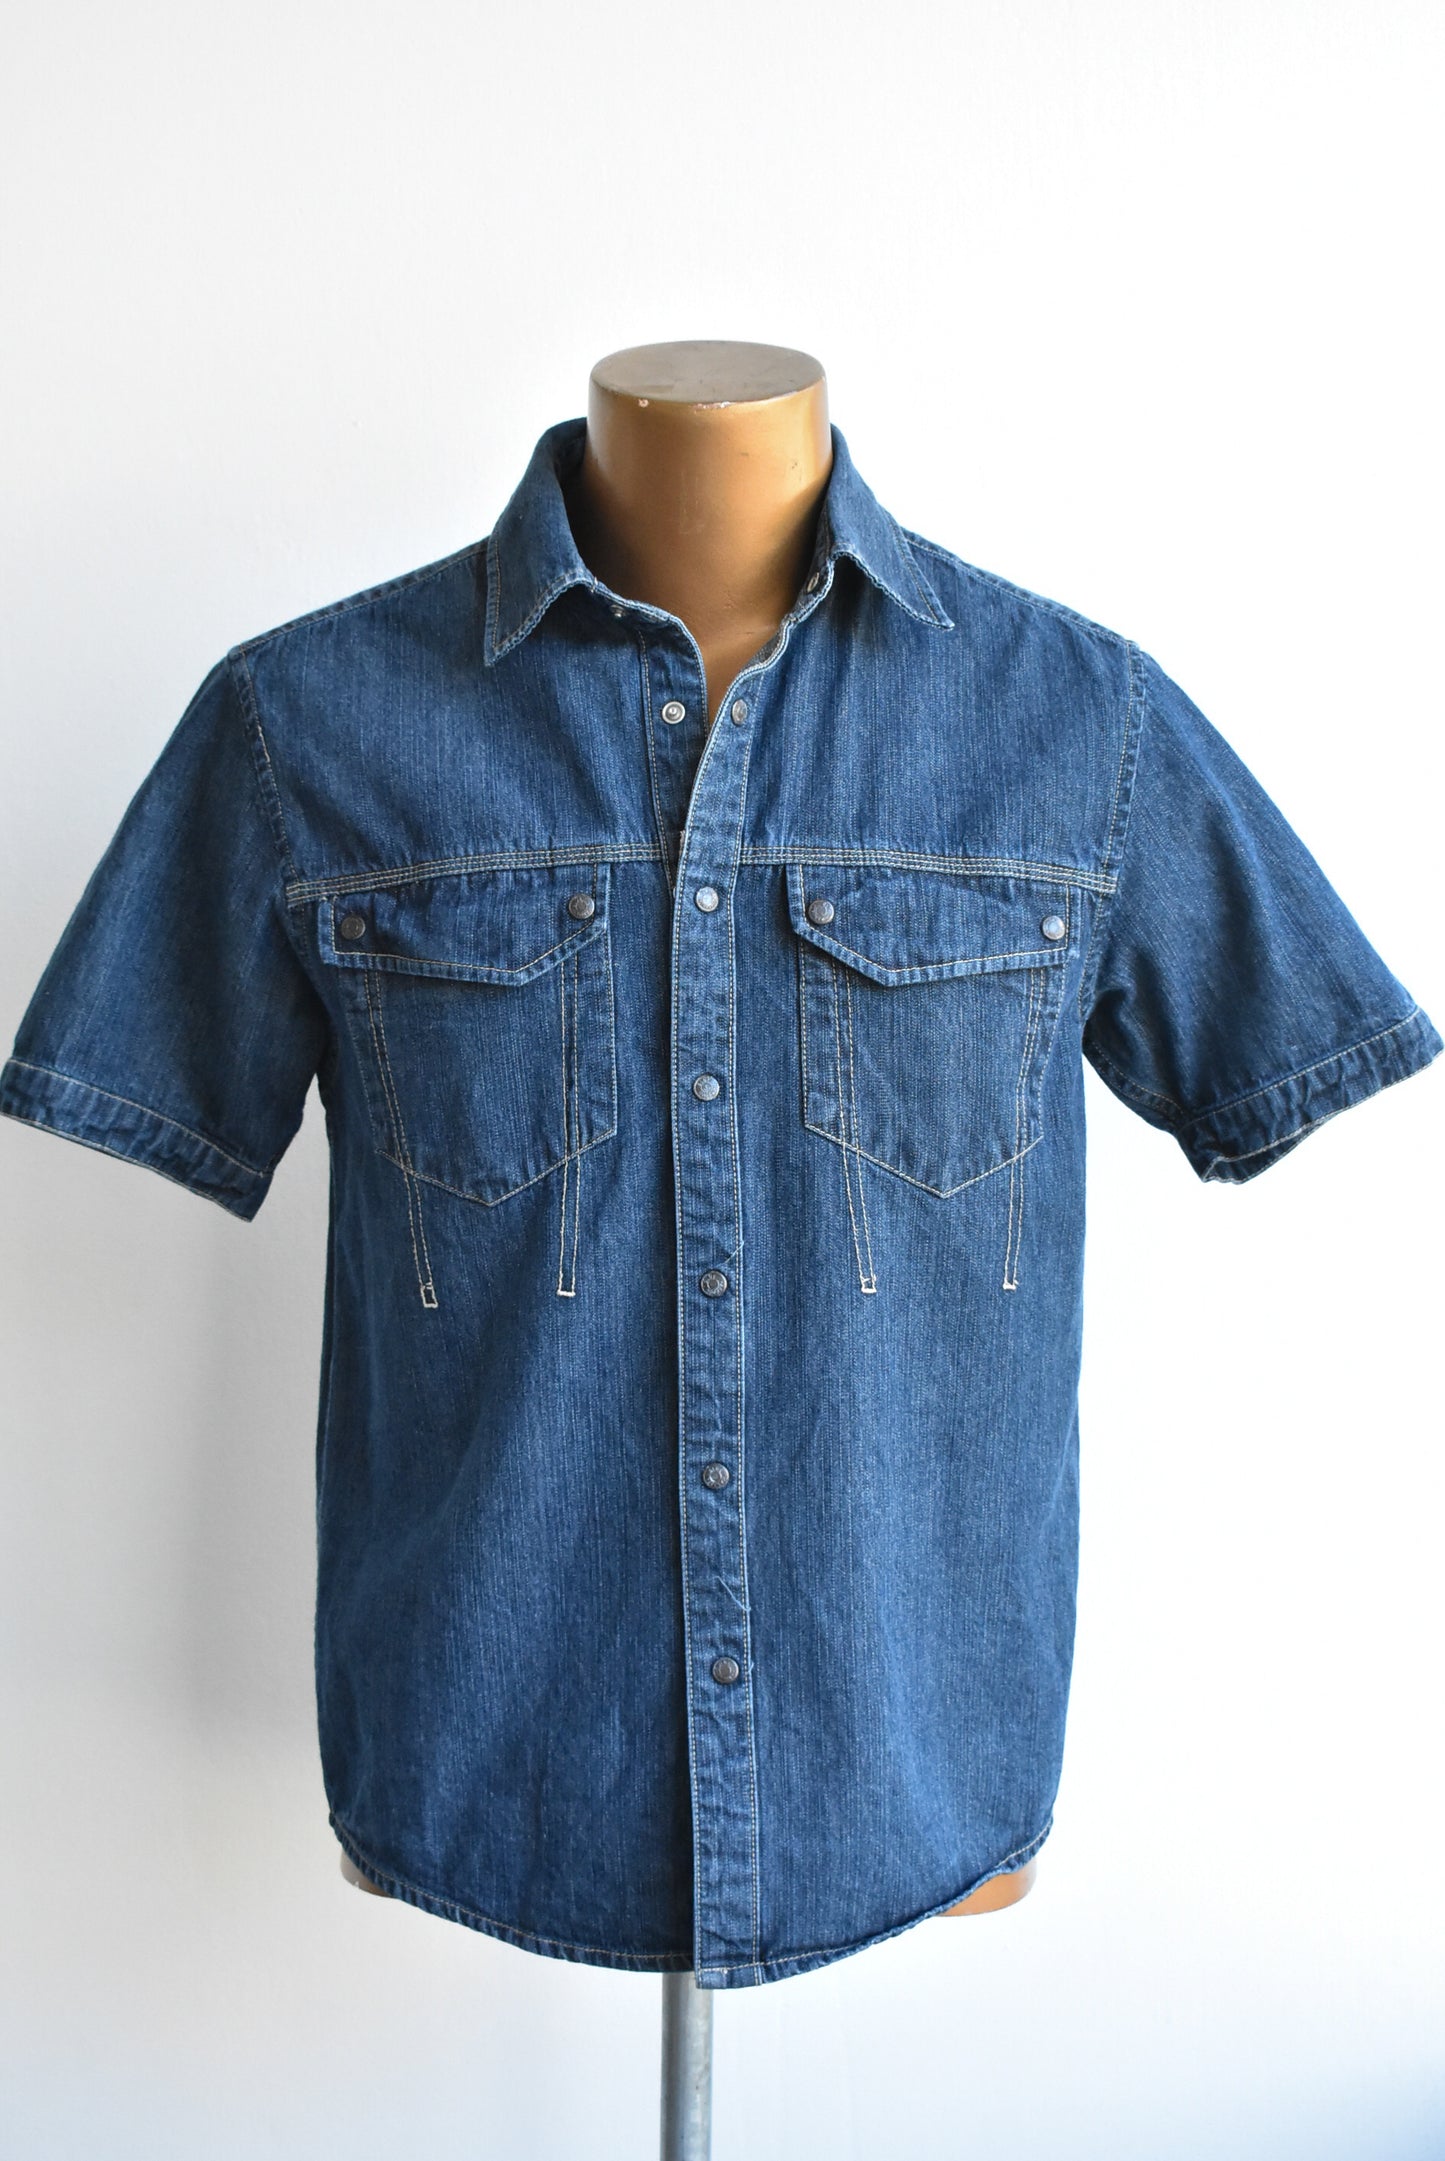 Blue Harbour denim shirt, size S